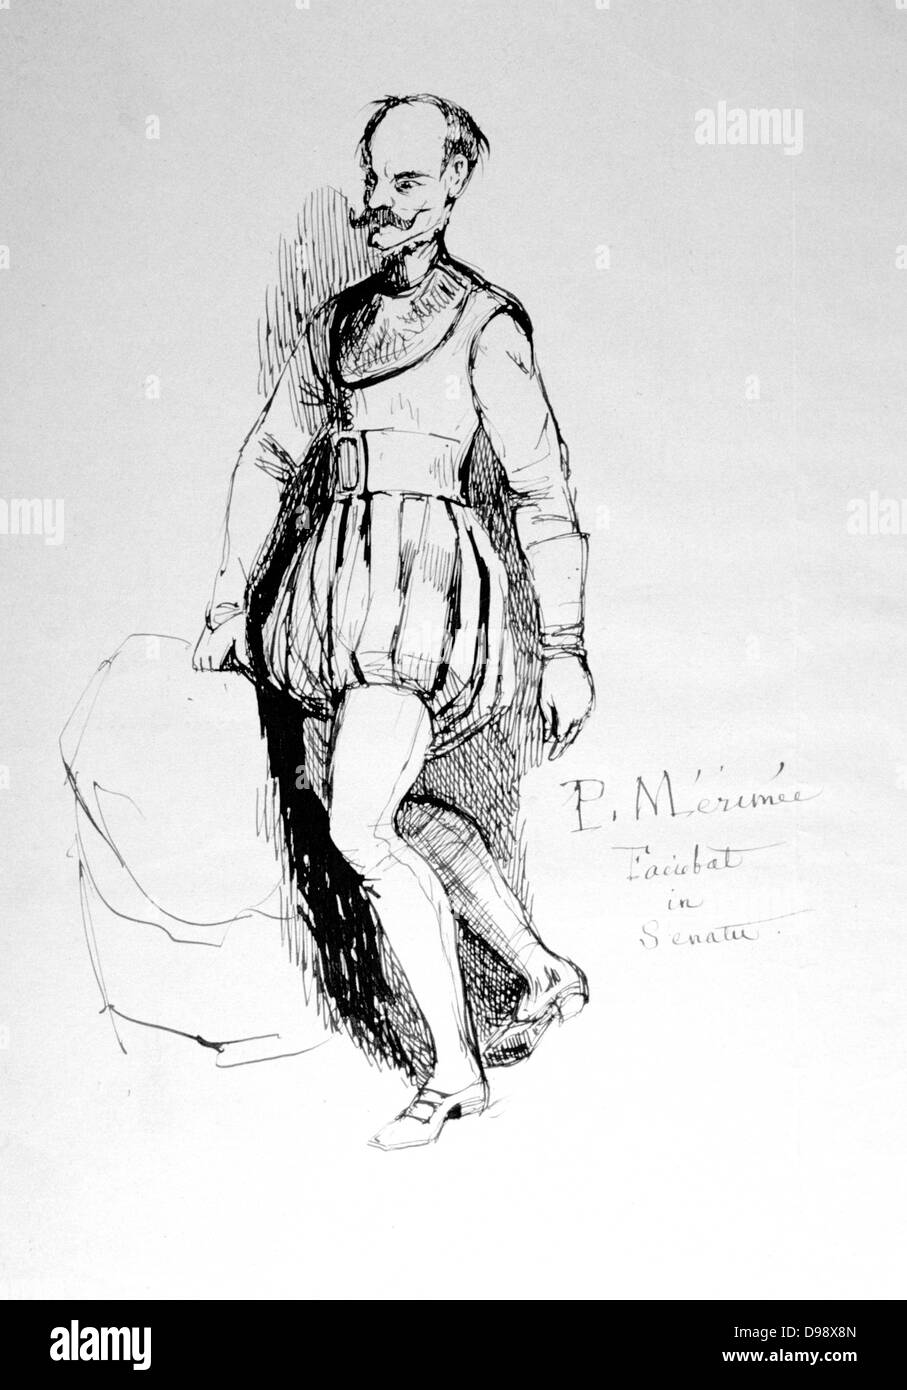 La figure au 16ème siècle le costume. Plume et encre dessin par Propsper Mérimée (1803-1870) dramaturge Frenh, historien et archéologue. Banque D'Images